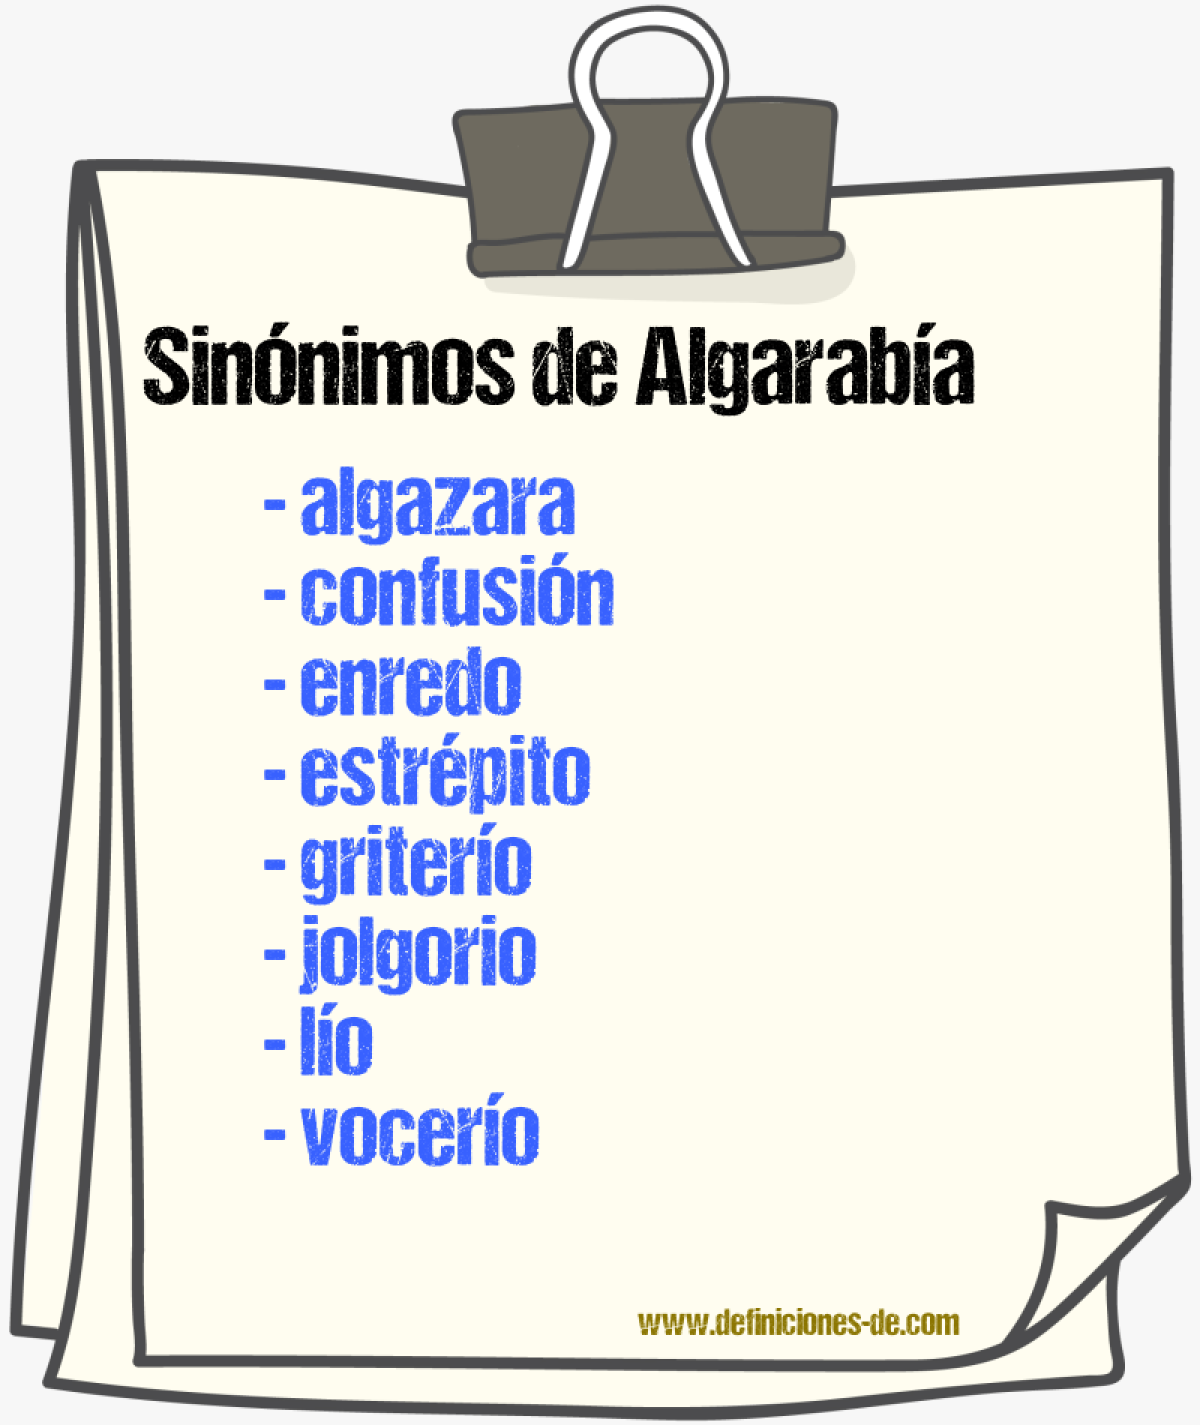 Sinónimos de algarabía